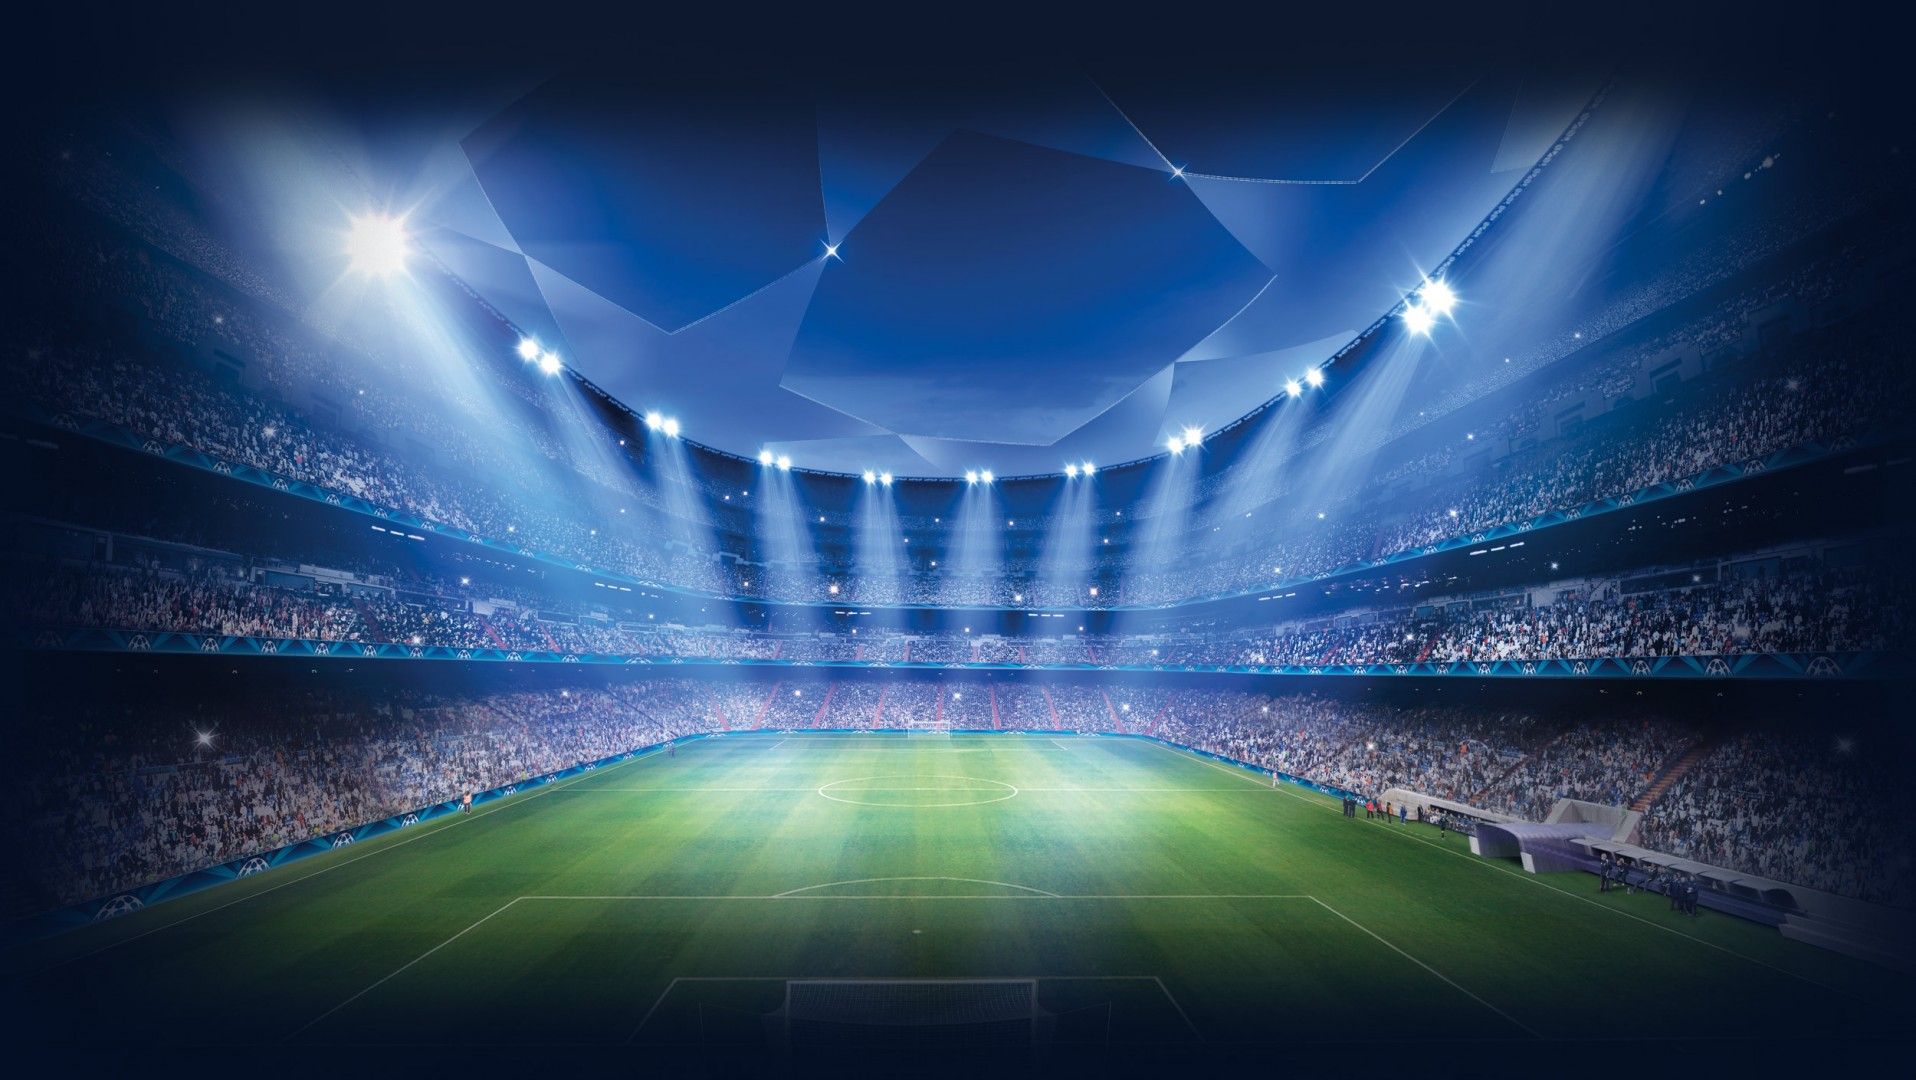 20 best Free HD Football / Soccer Wallpapers | Tech-Lovers l Web ...